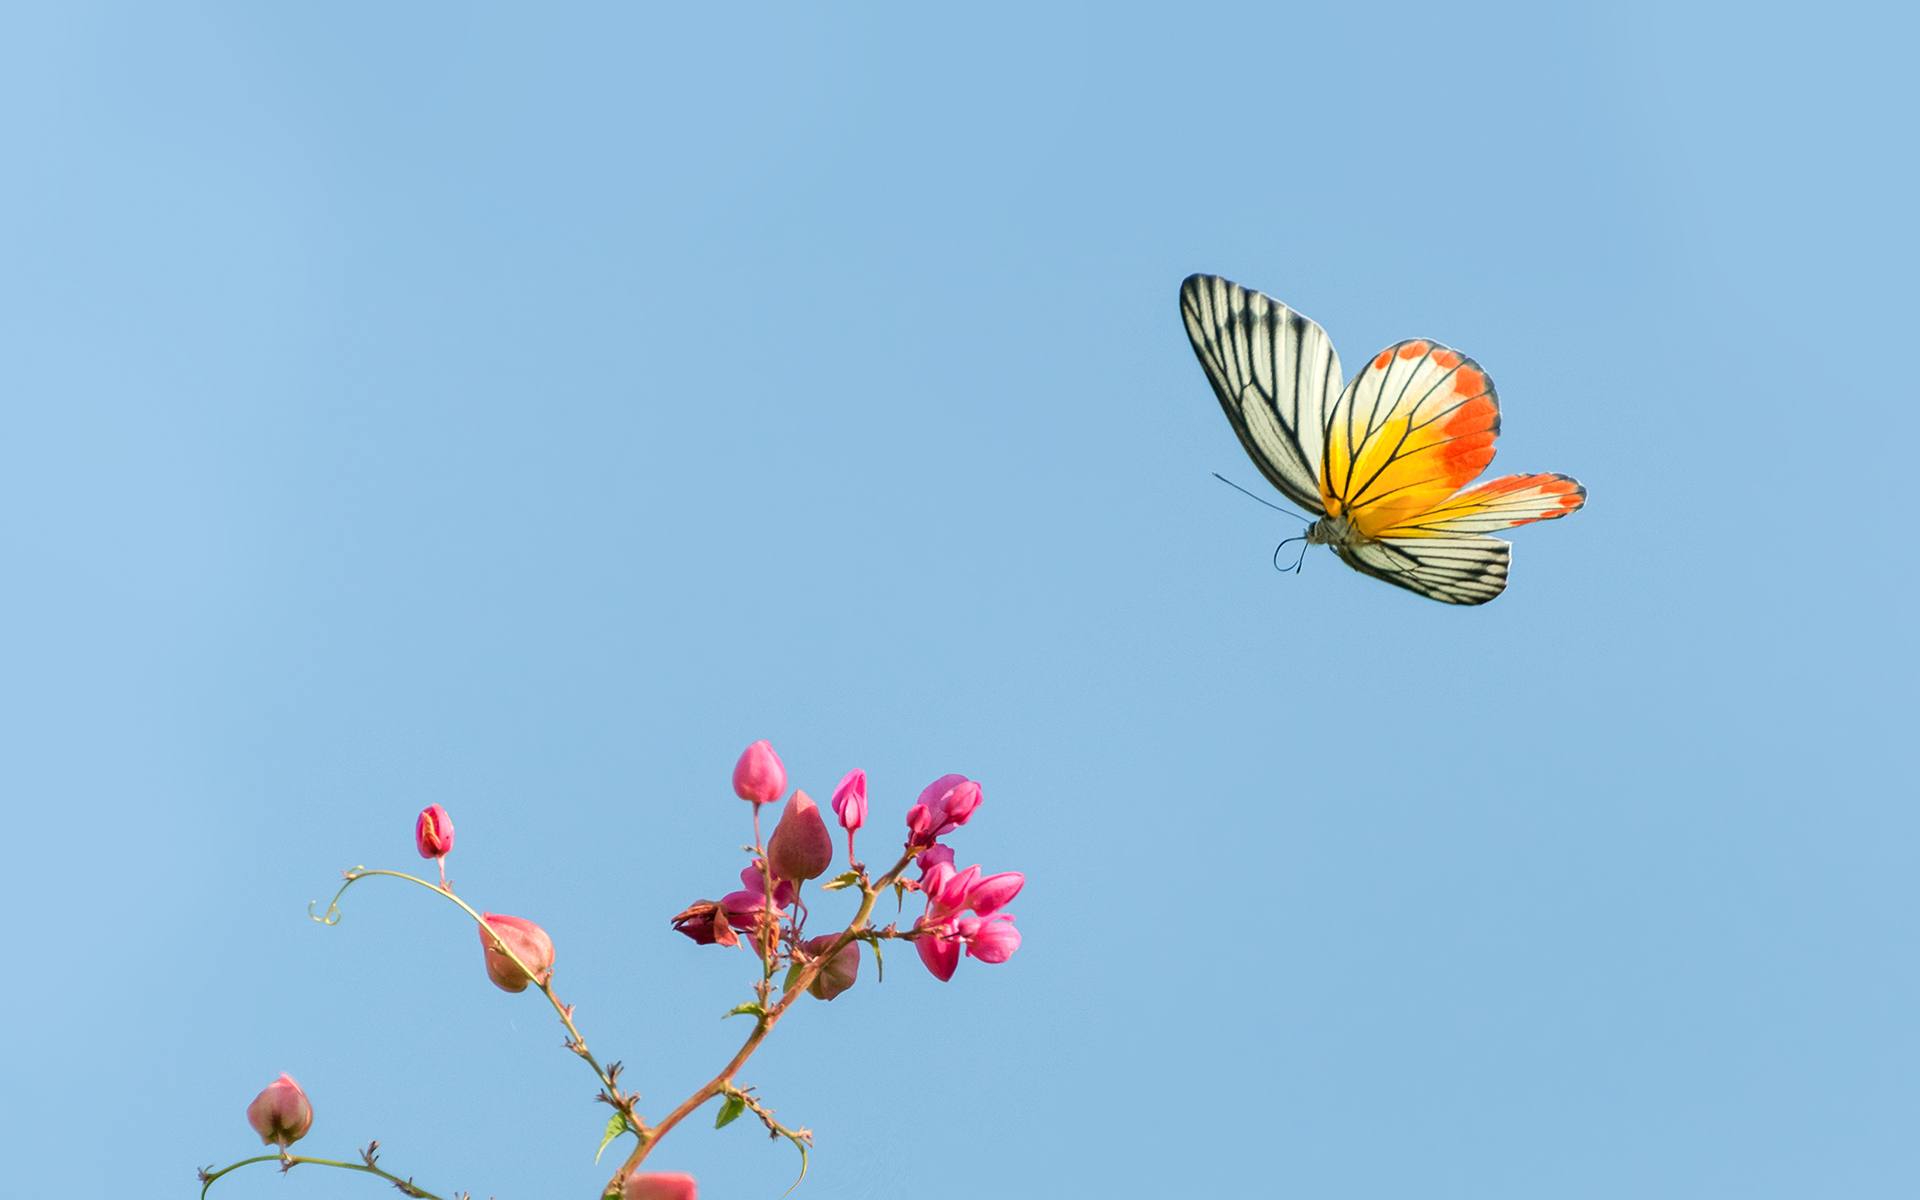 butterfly landing on flower